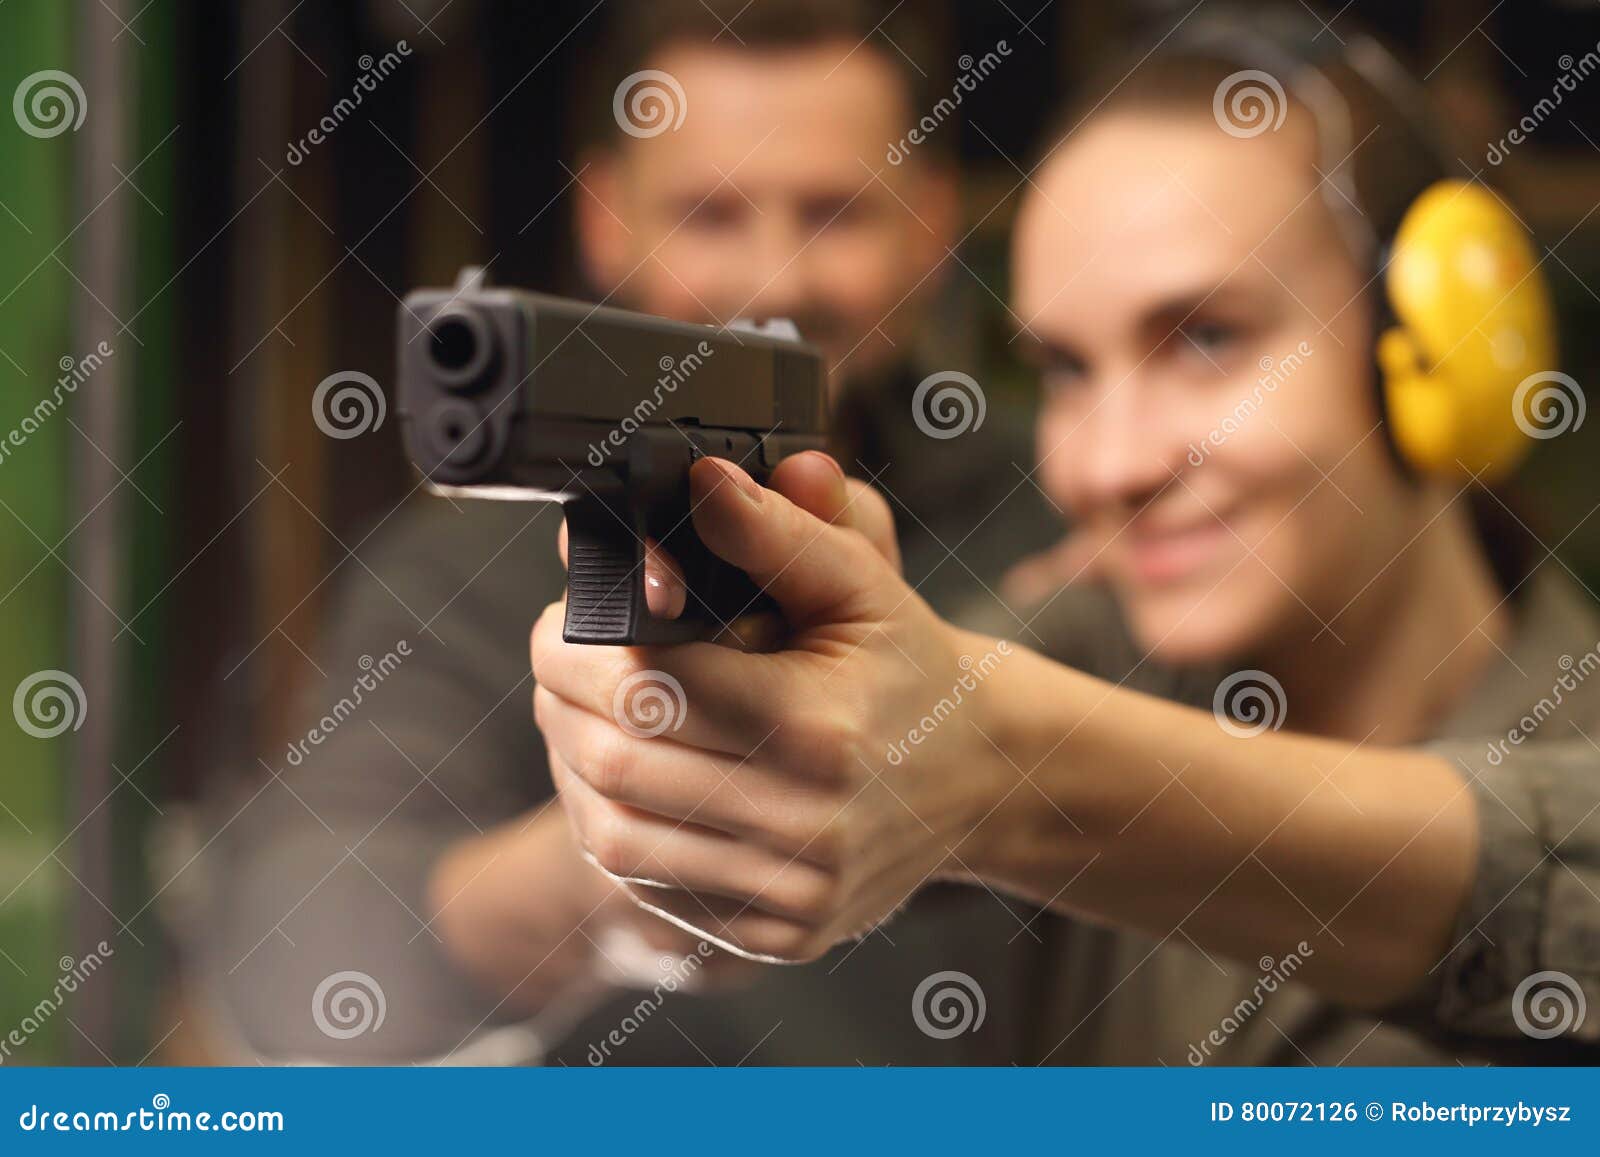 glock, woman shoots at the shooting range